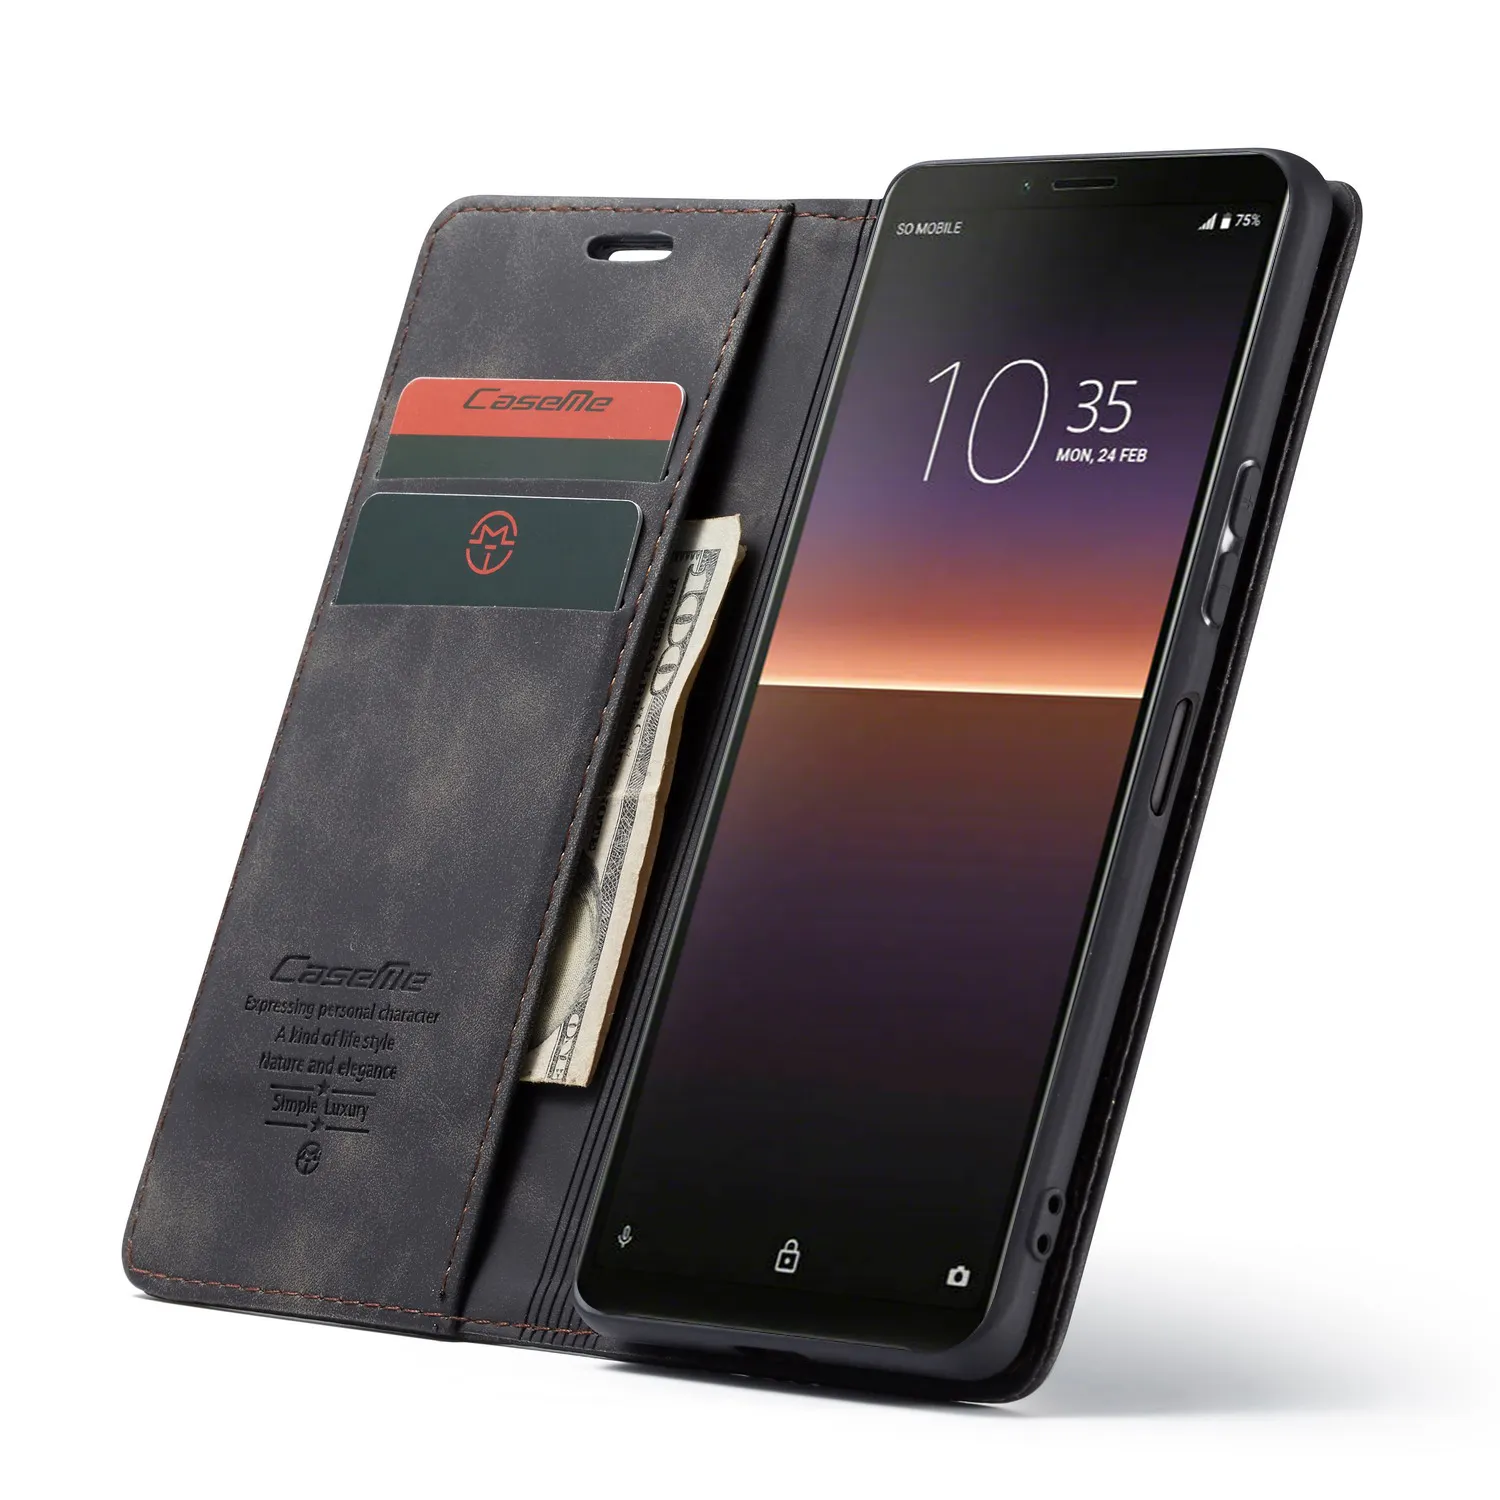 CaseMe 2020 Nuovo Design per LG G6 G7 G8 G5 V20 V10 Accessori di Caso Della Copertura Del Telefono Mobile Retro Colorato per sony Xperia 1 II Caso